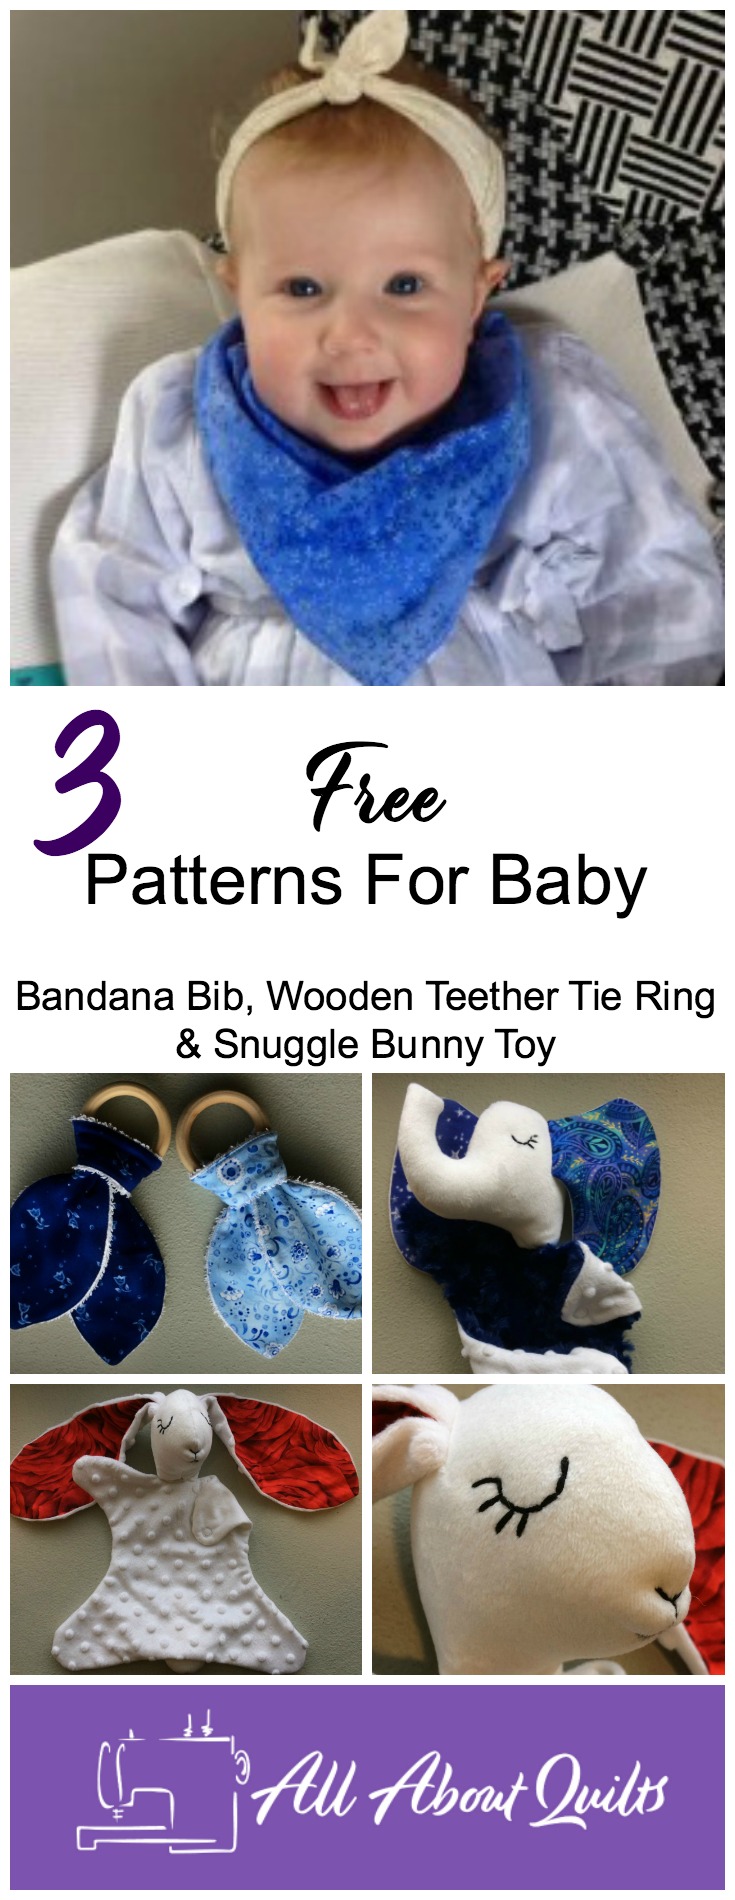 3 Free baby patterns